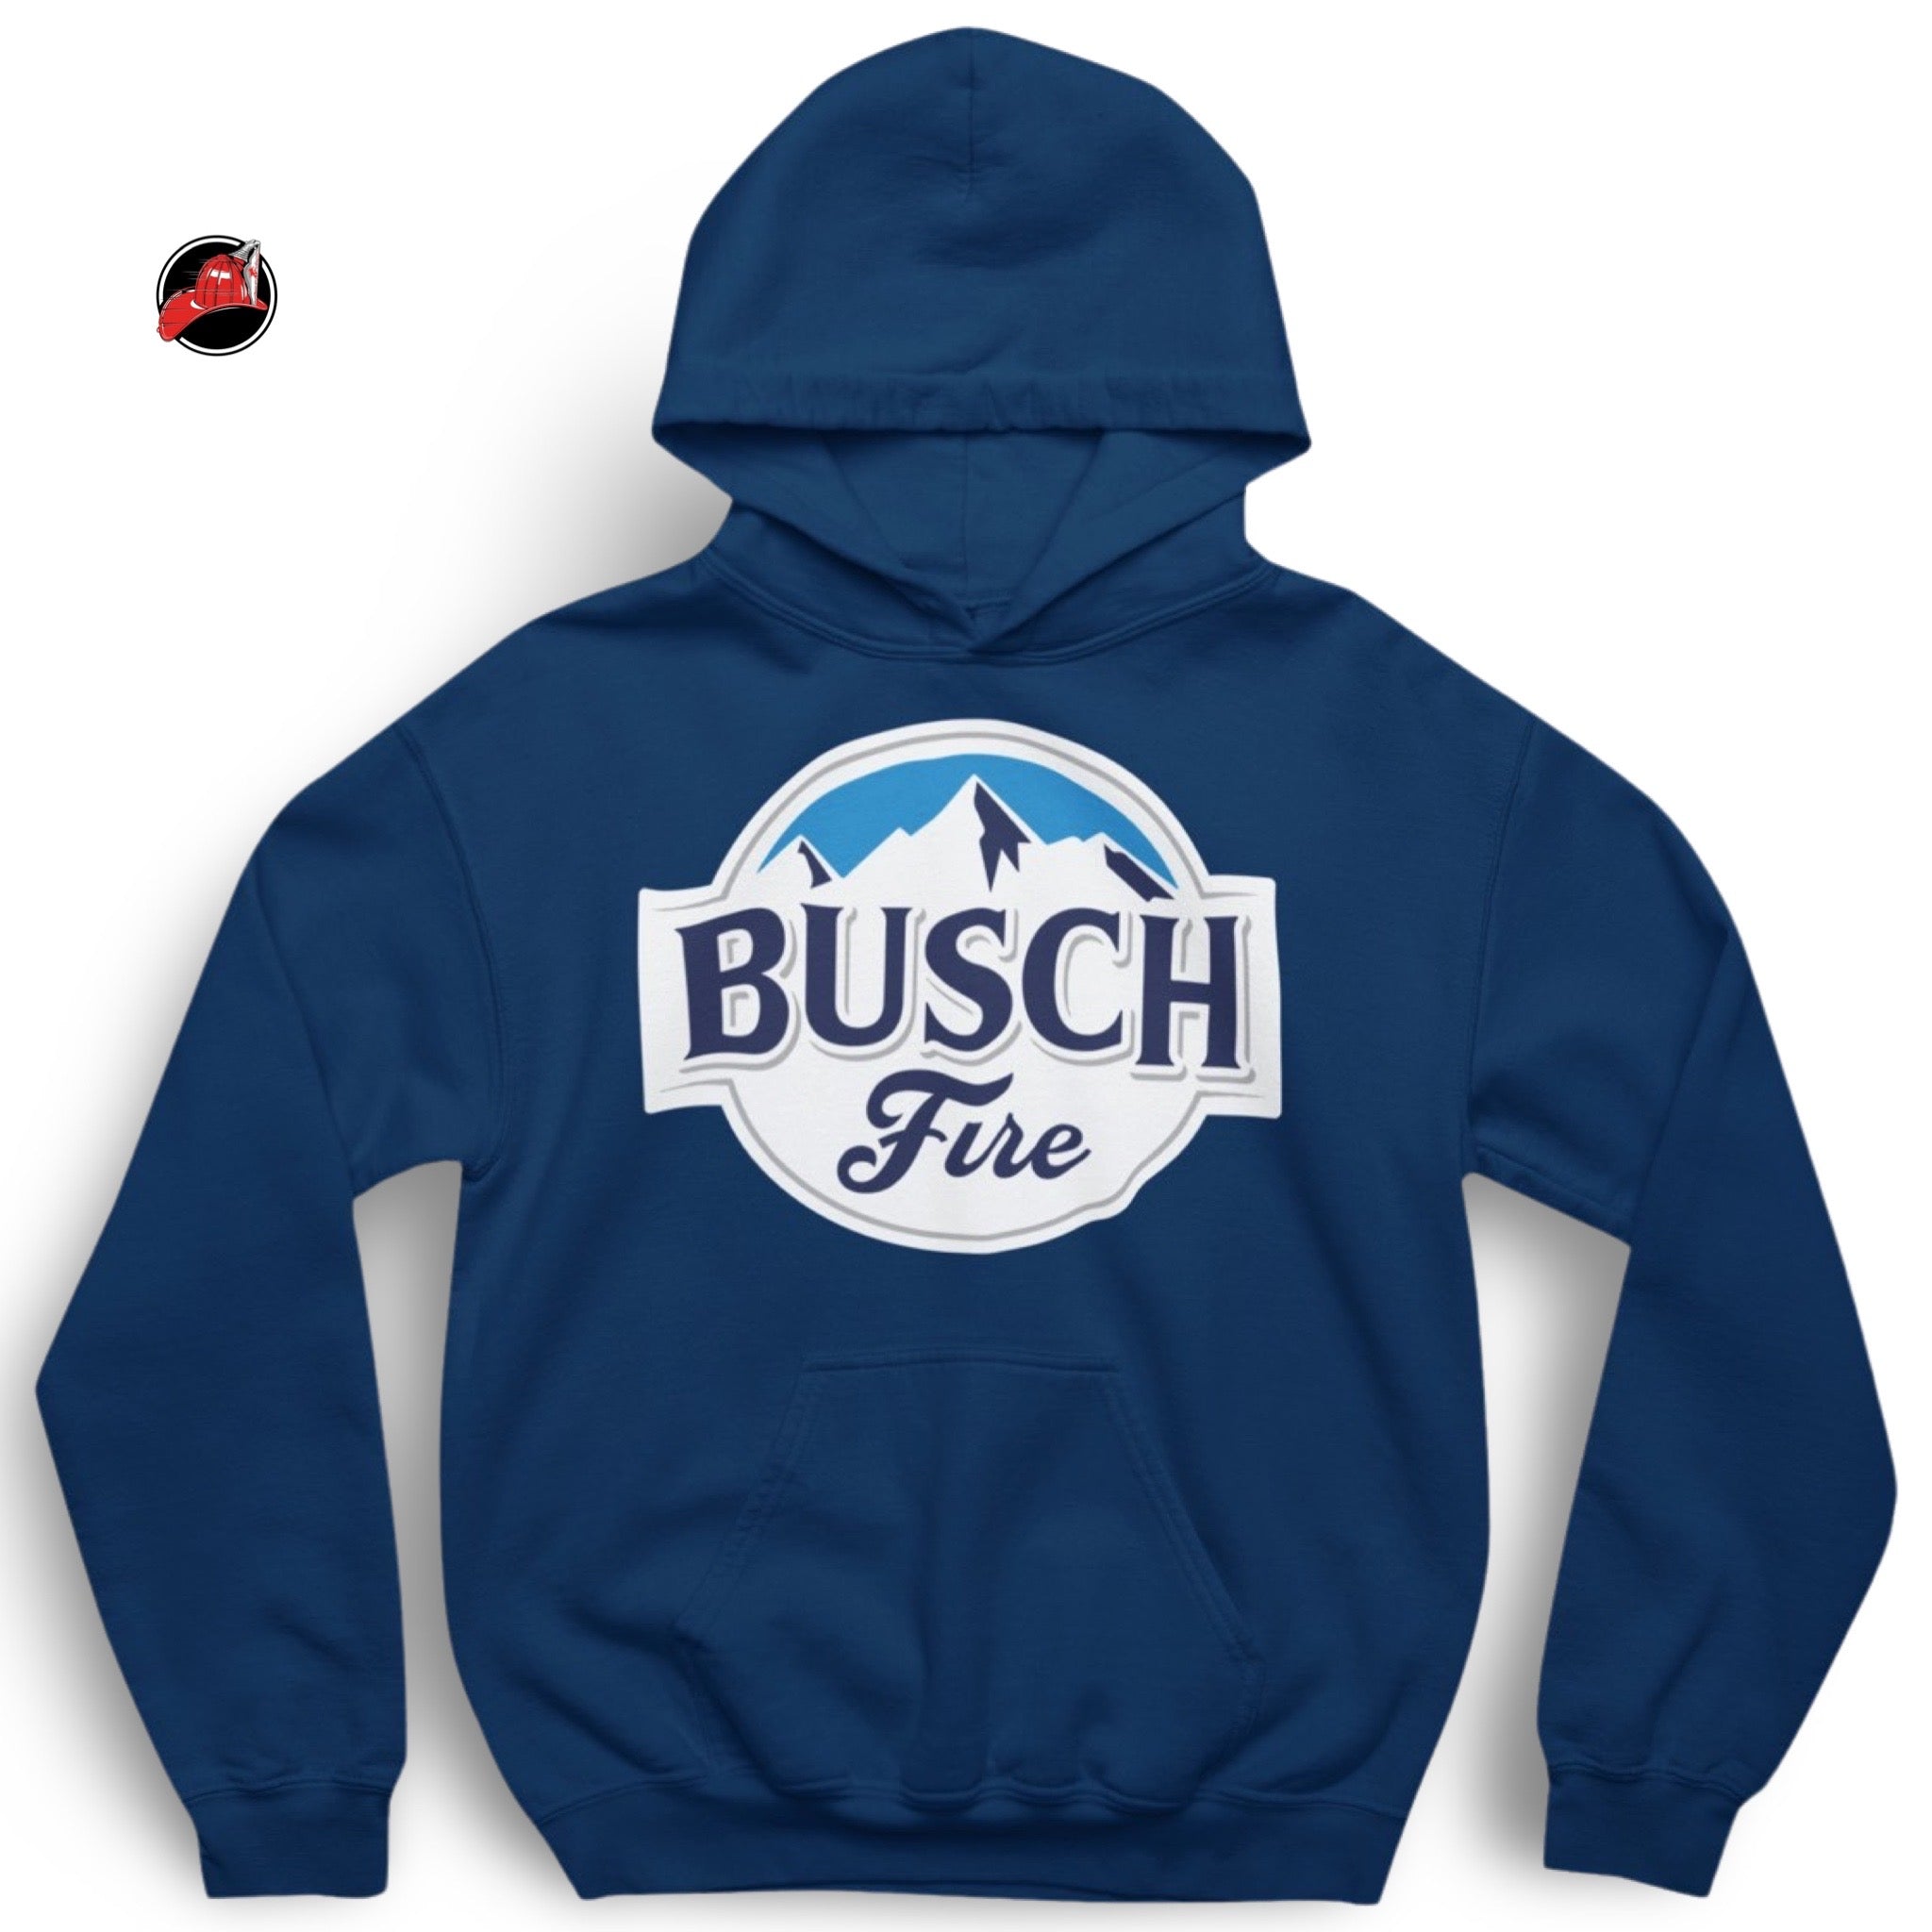 Busch Fire Hoodie